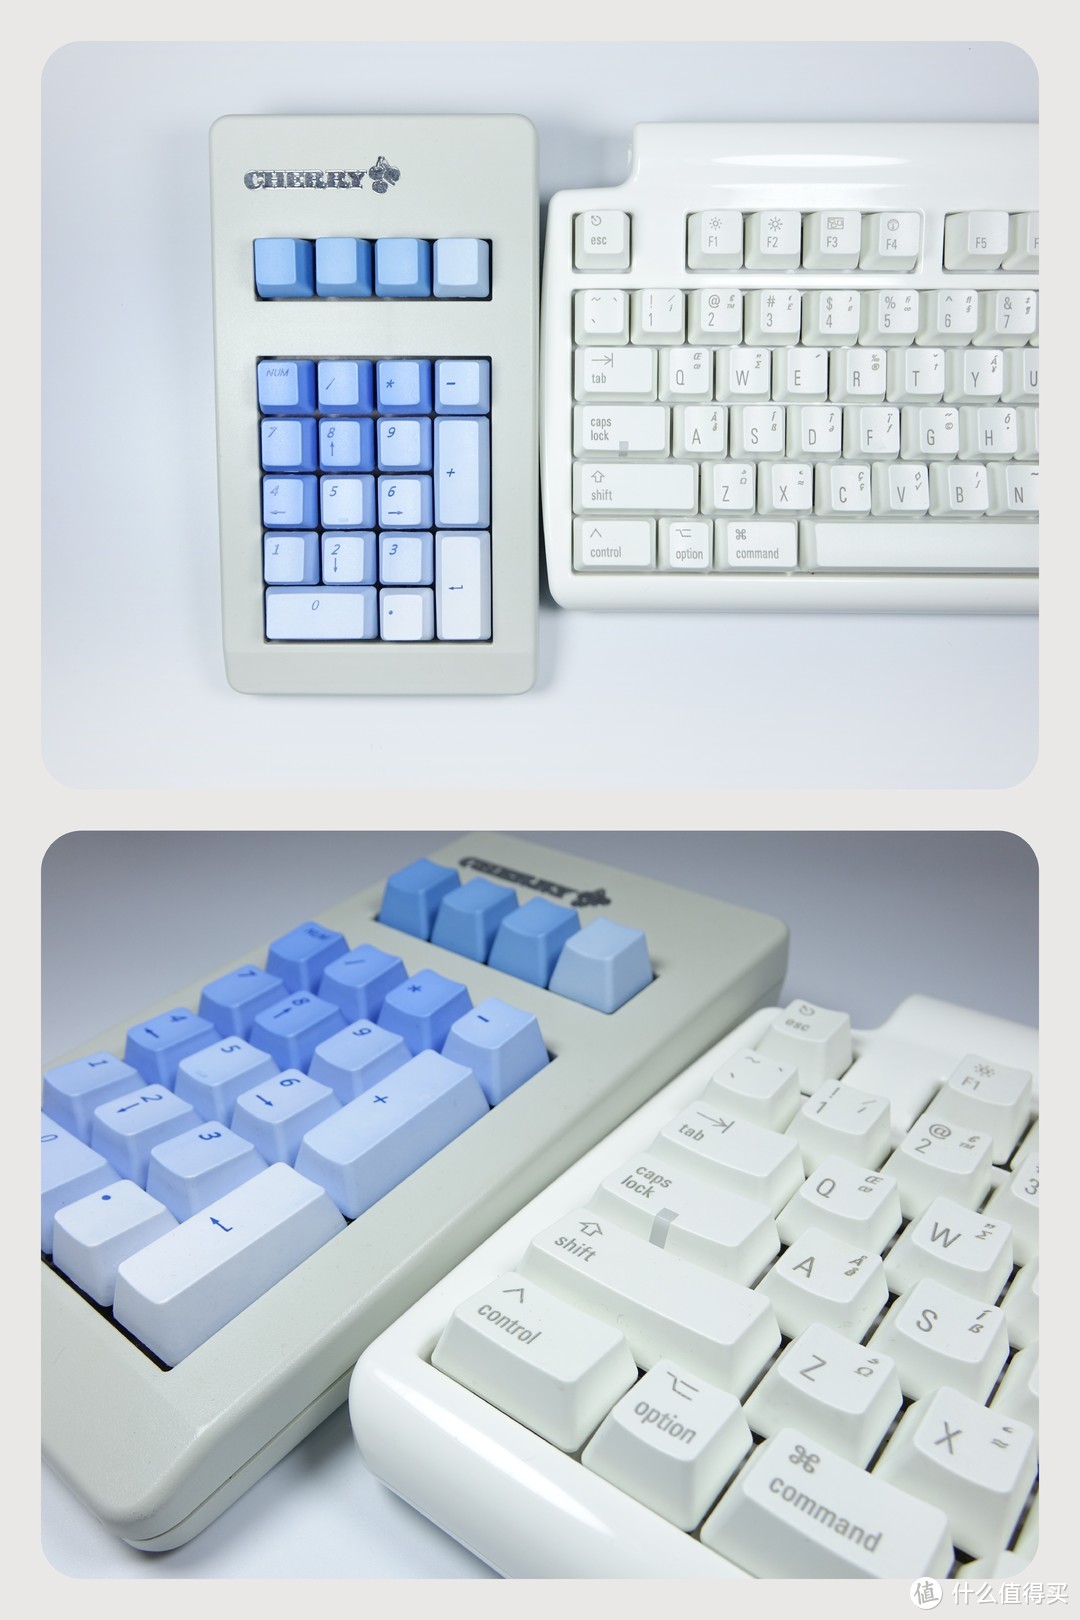 Matias 马太亚 Mini Tactile Pro FK303 Alps 简易轴 键盘